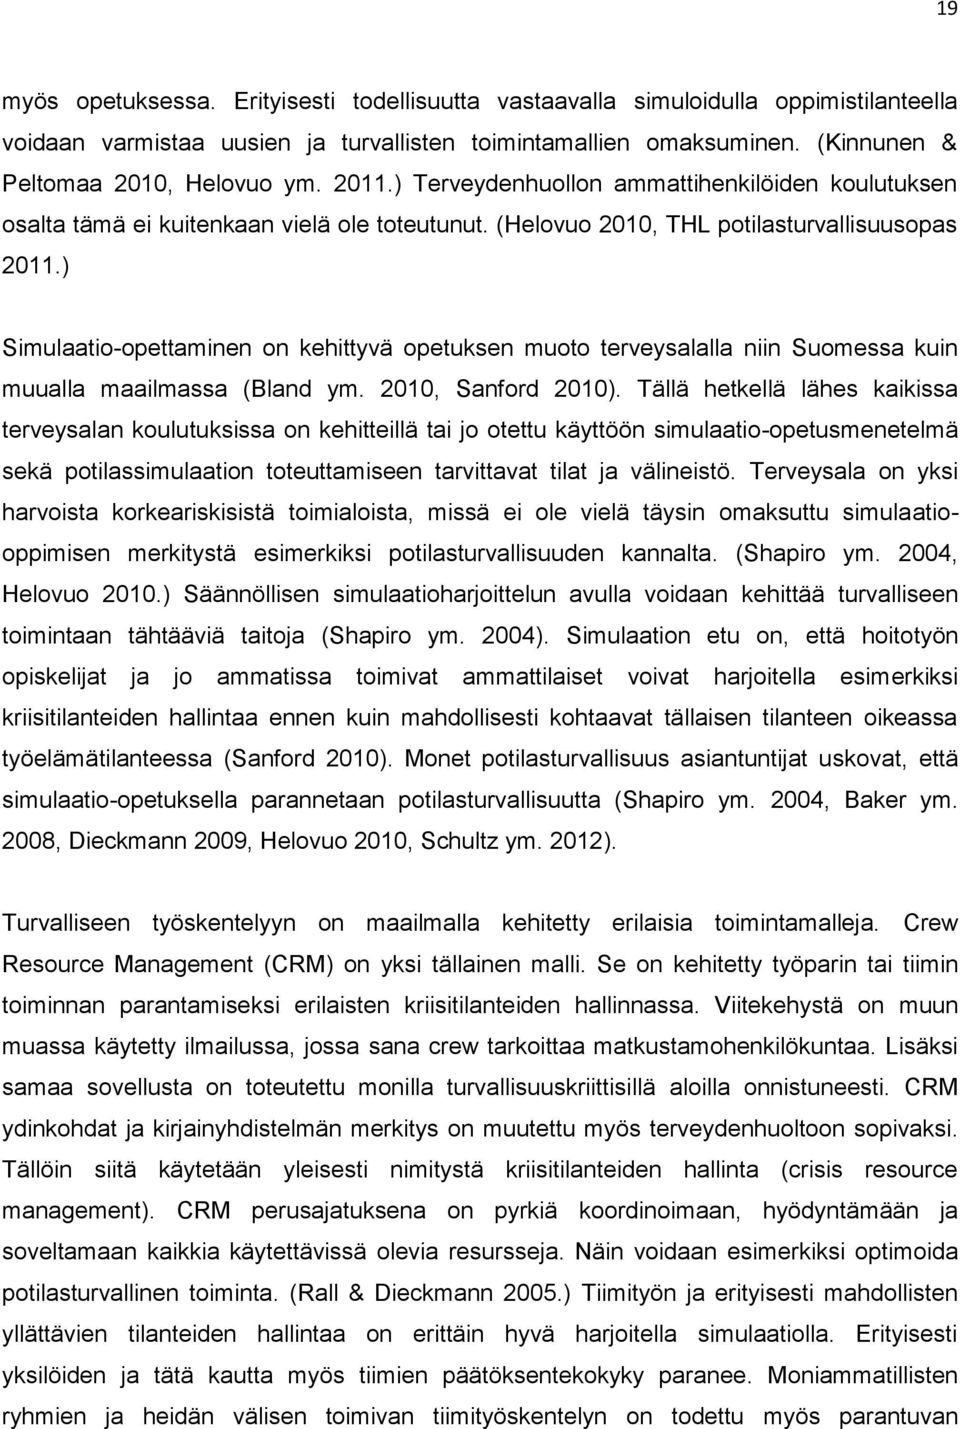 ) Simulaatio-opettaminen on kehittyvä opetuksen muoto terveysalalla niin Suomessa kuin muualla maailmassa (Bland ym. 2010, Sanford 2010).